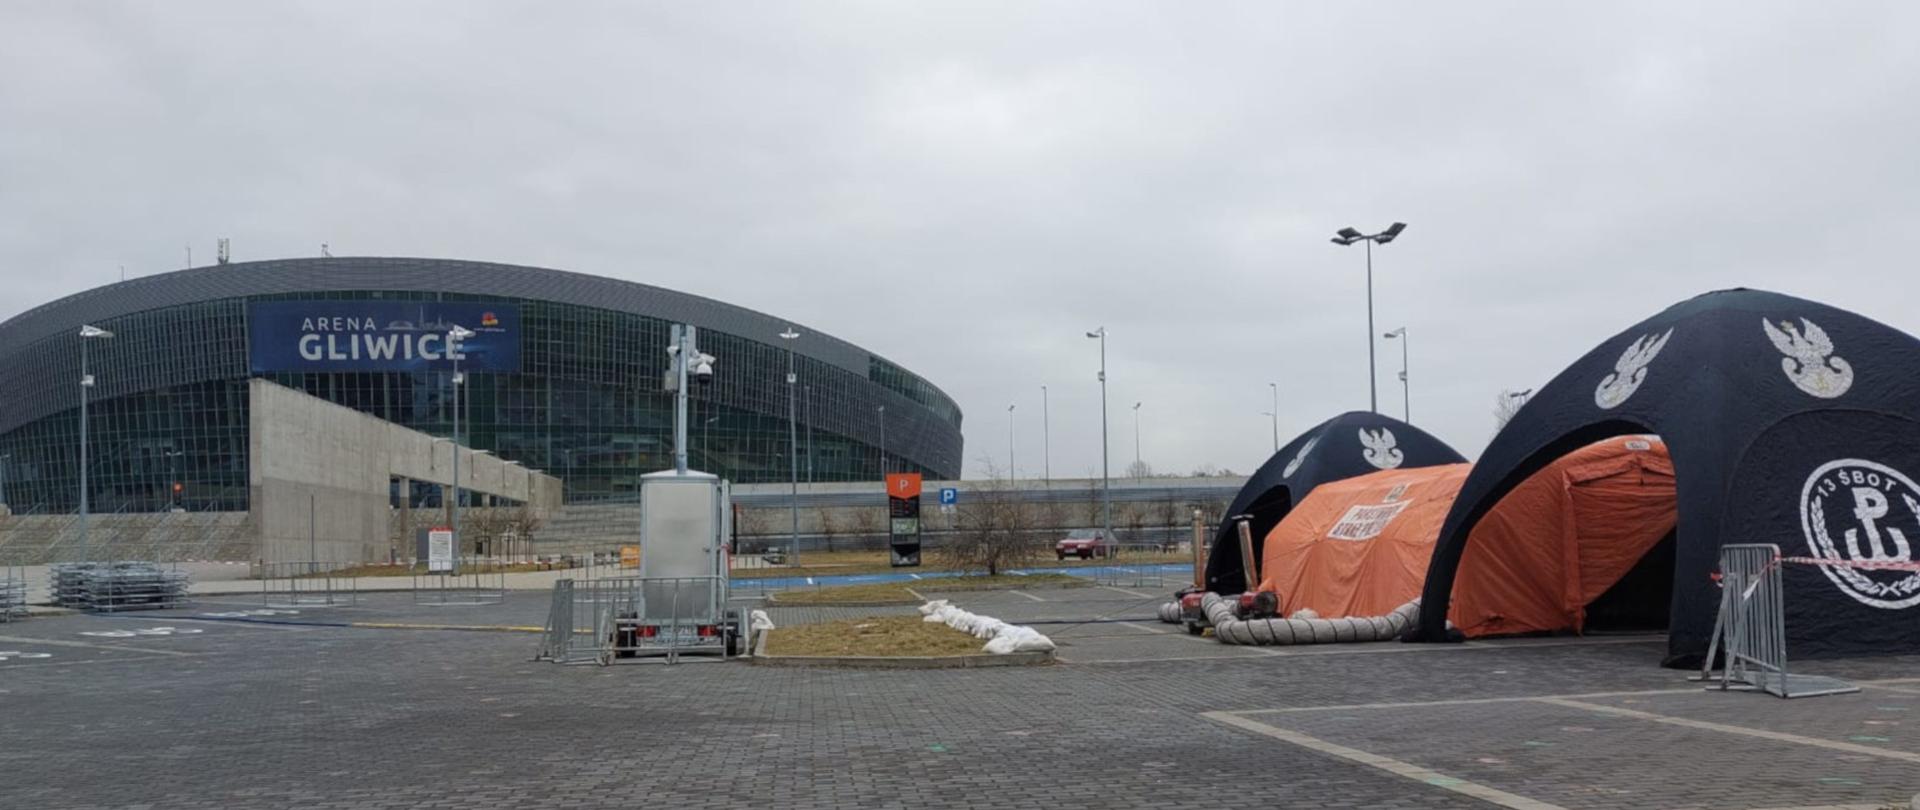 Na zdjęciu widoczne na parkingu przed halą widowiskową, po prawej stronie trzy namioty. W środku pomarańczowy ,pneumatyczny PSP, po bokach namioty WOT. Na wprost widoczna hala Arena w Gliwicach.